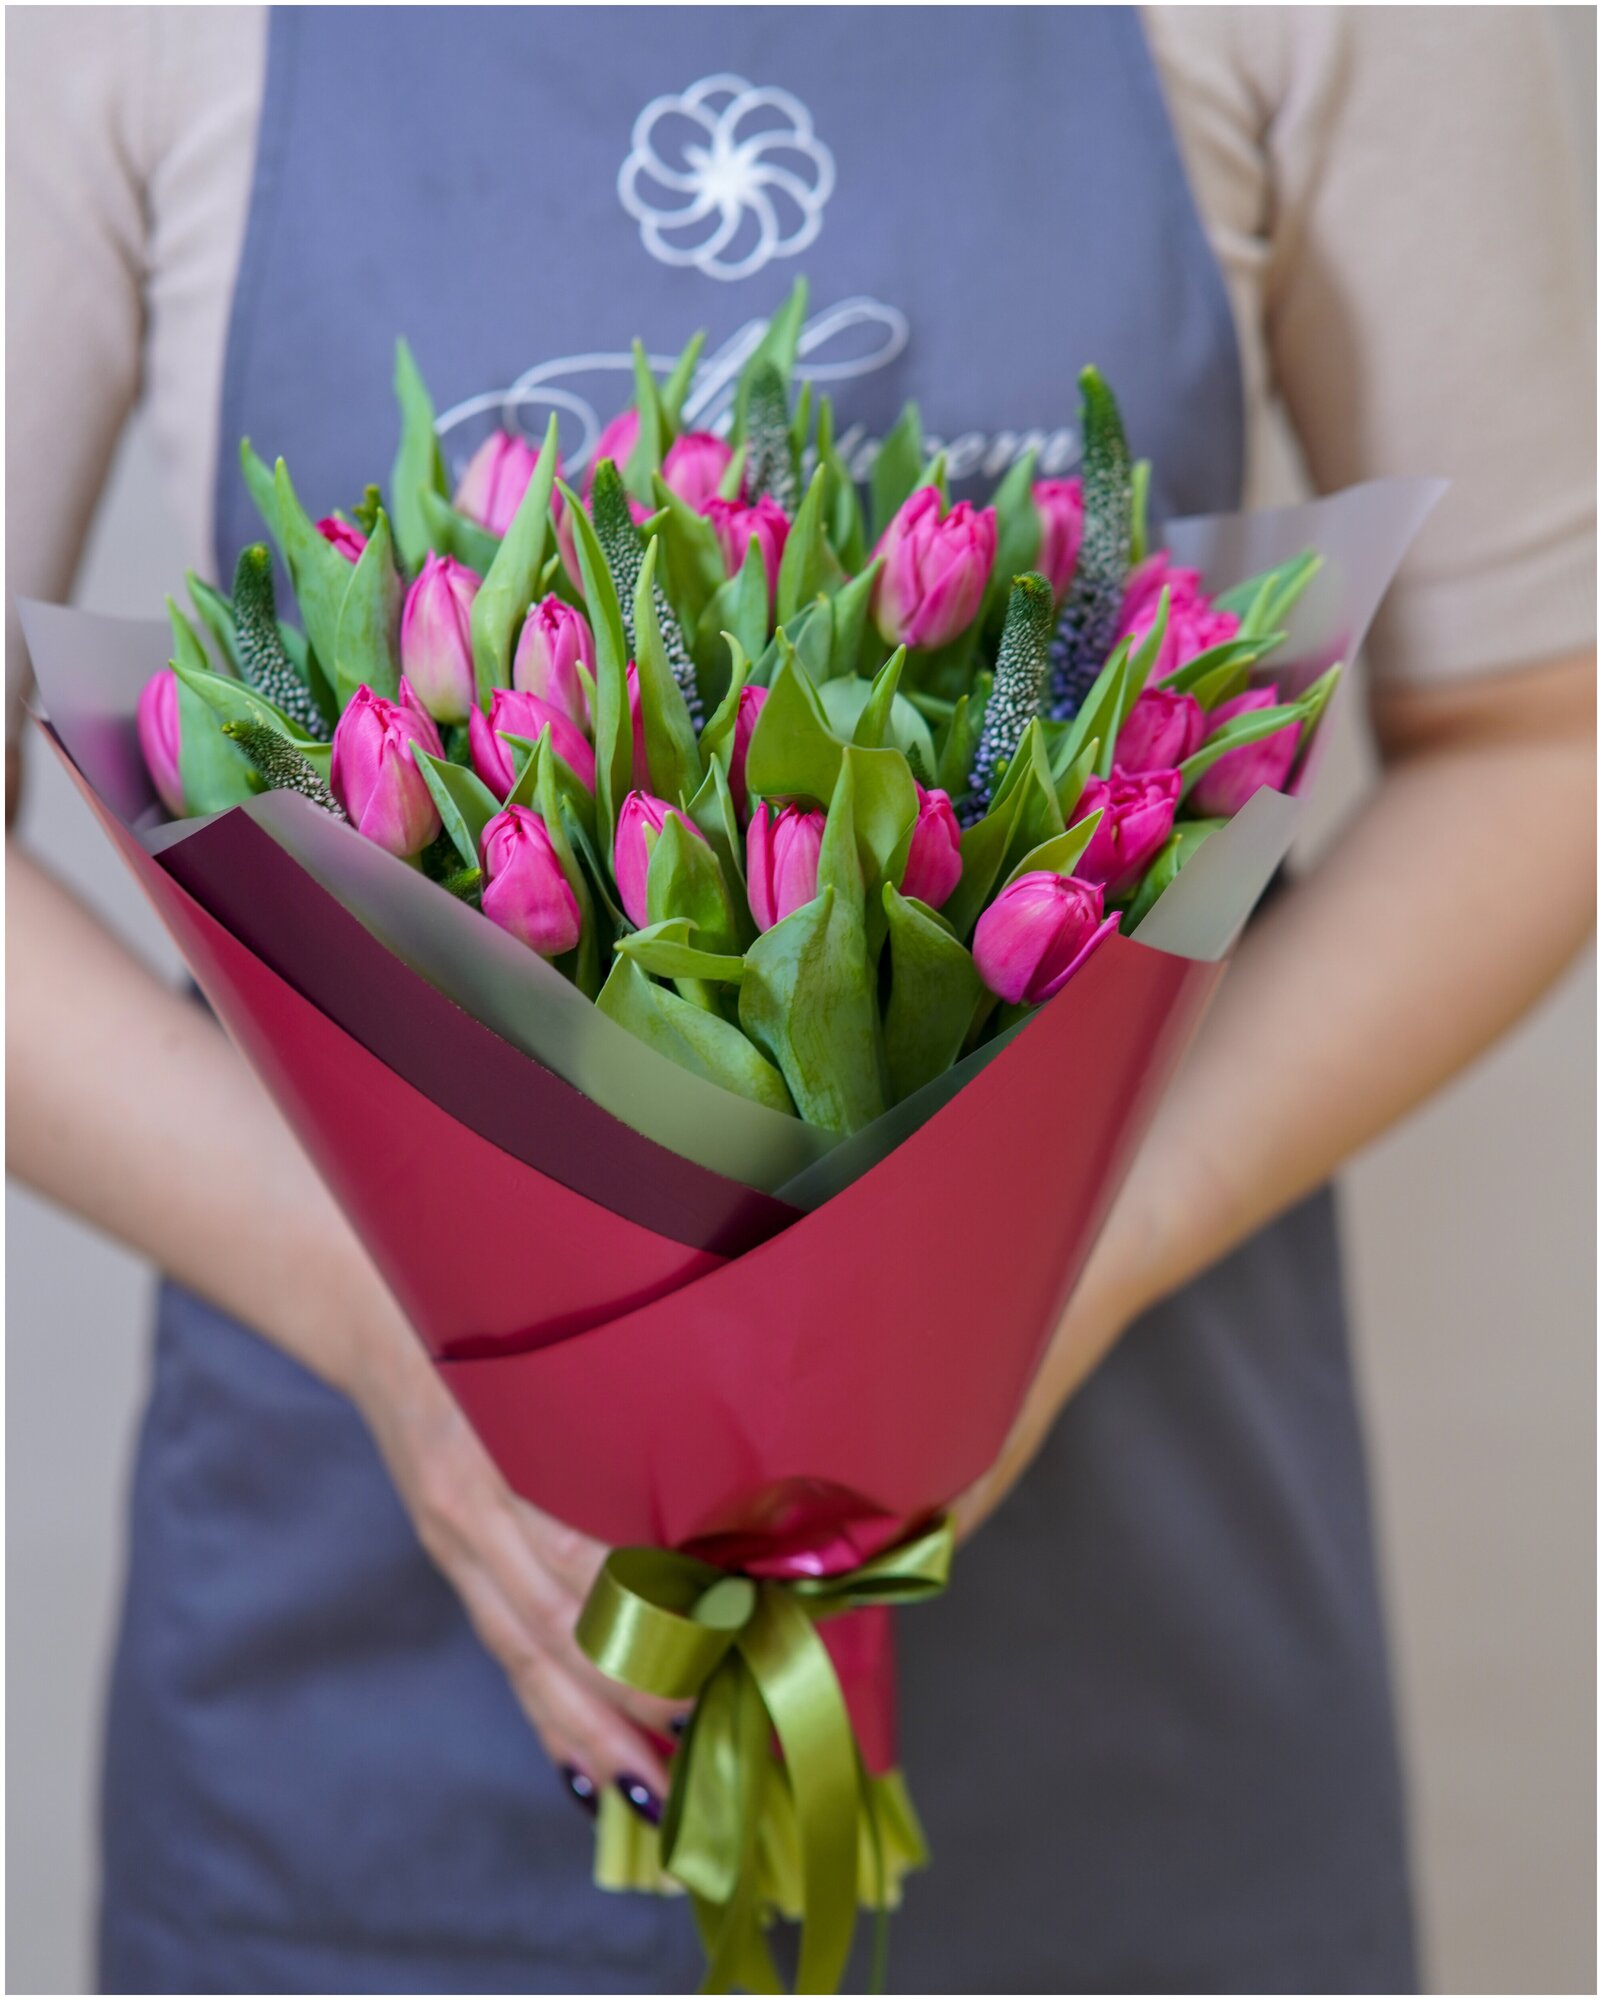 Букет живых цветов из 25 розовых тюльпанов и вероники в упаковке